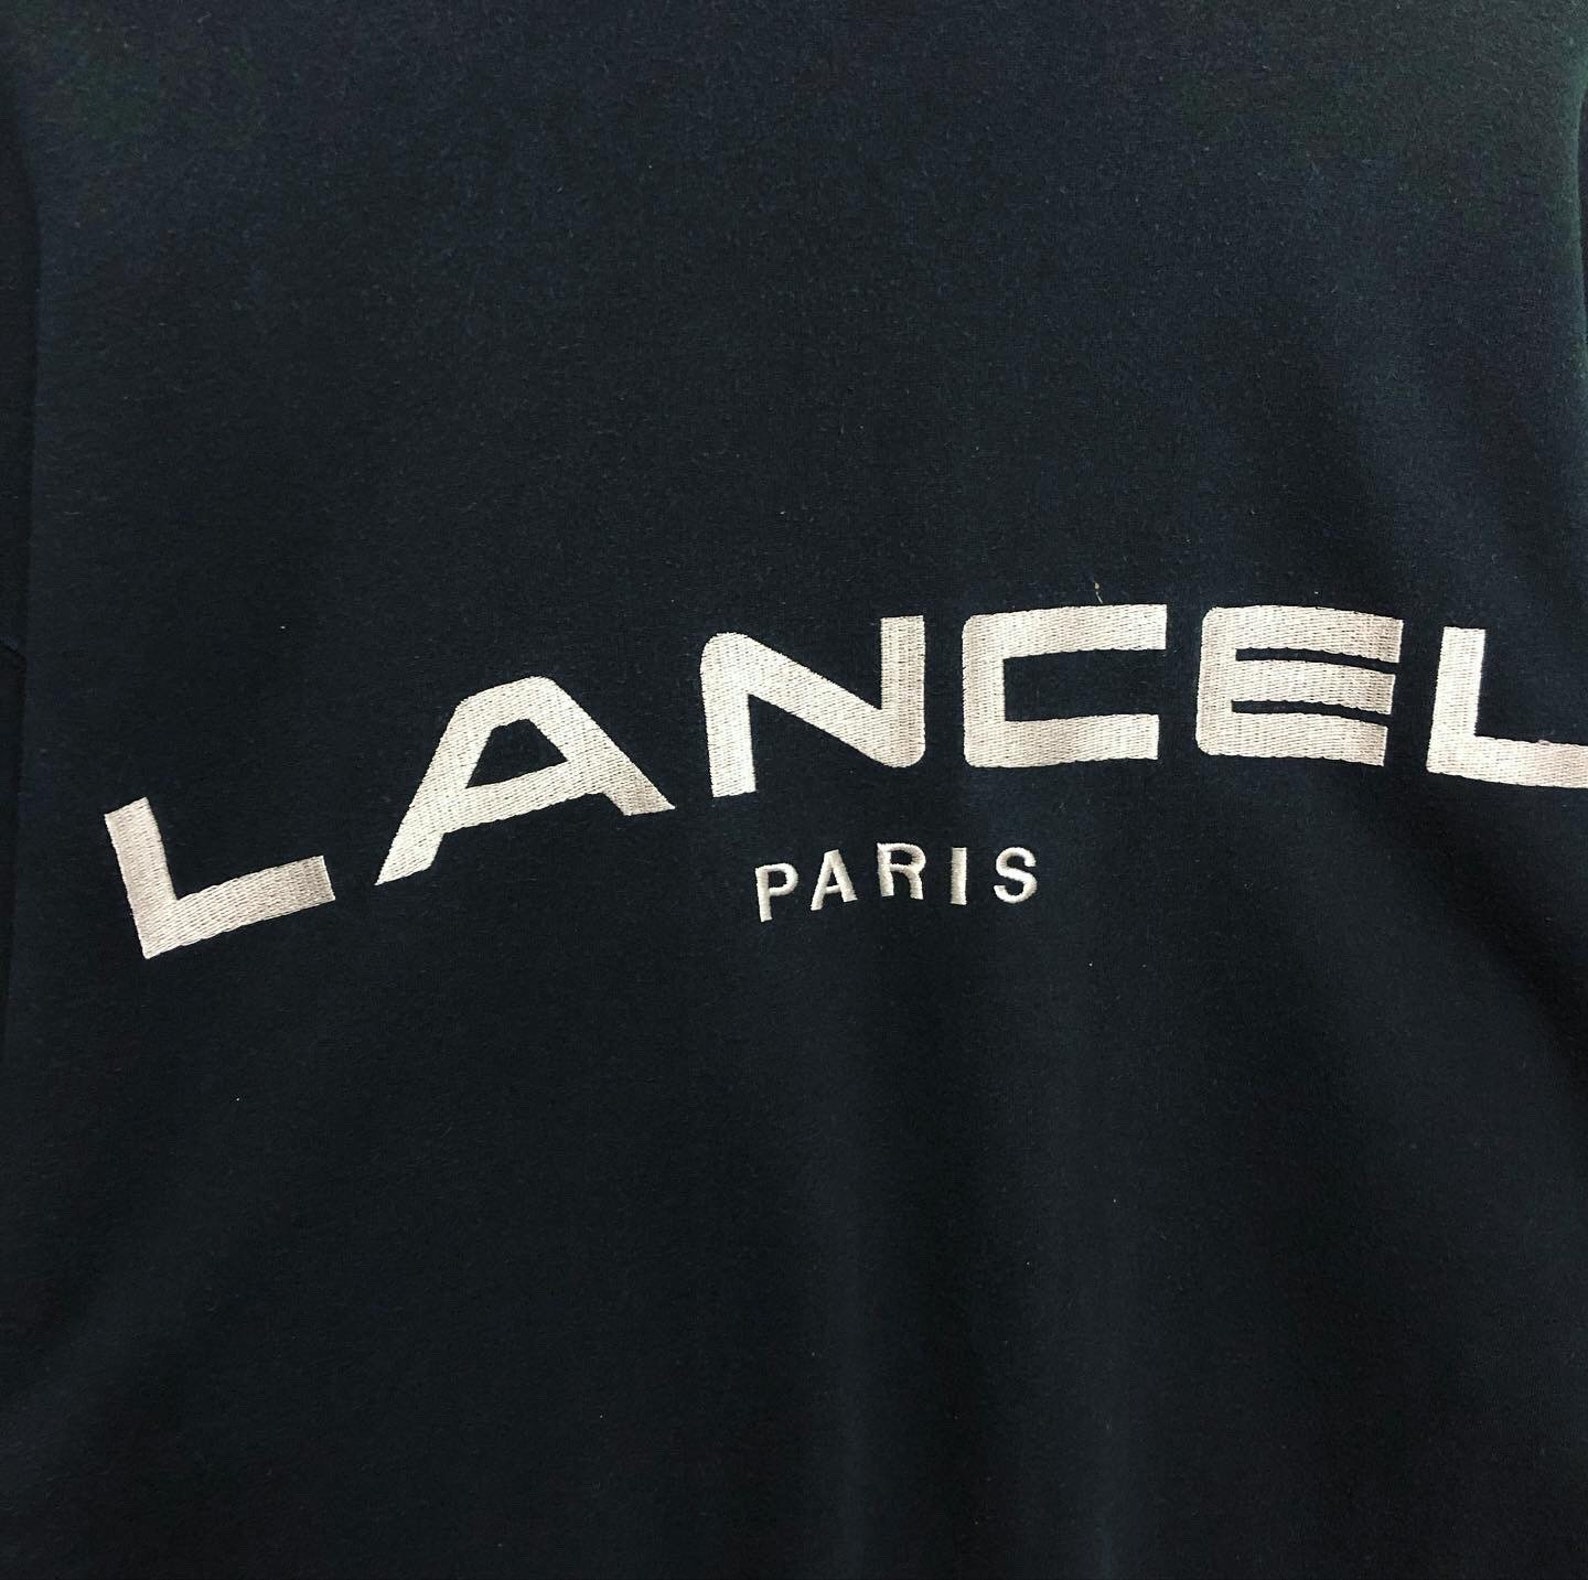 Vintage Lancel Paris Spellout Logo Embroidered Lancel Paris | Etsy